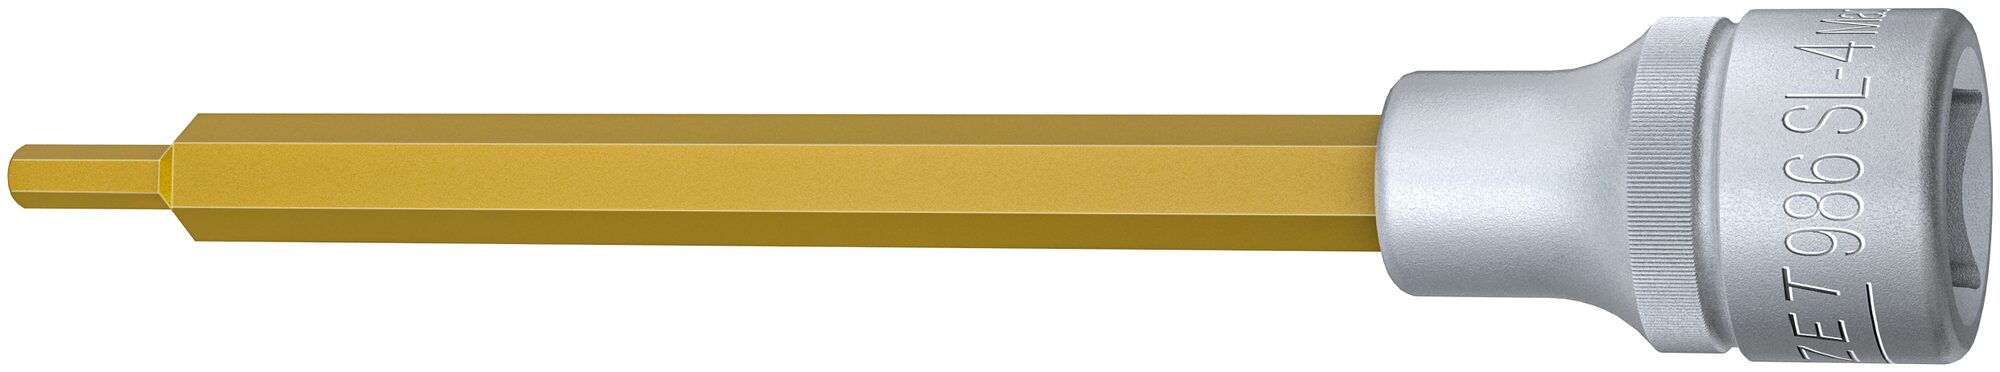 HAZET Schraubendreher-Steckschlüsseleinsatz 986SL-4 · Vierkant hohl 12,5 mm (1/2 Zoll) · Innen Sechskant Profil · 4 mm